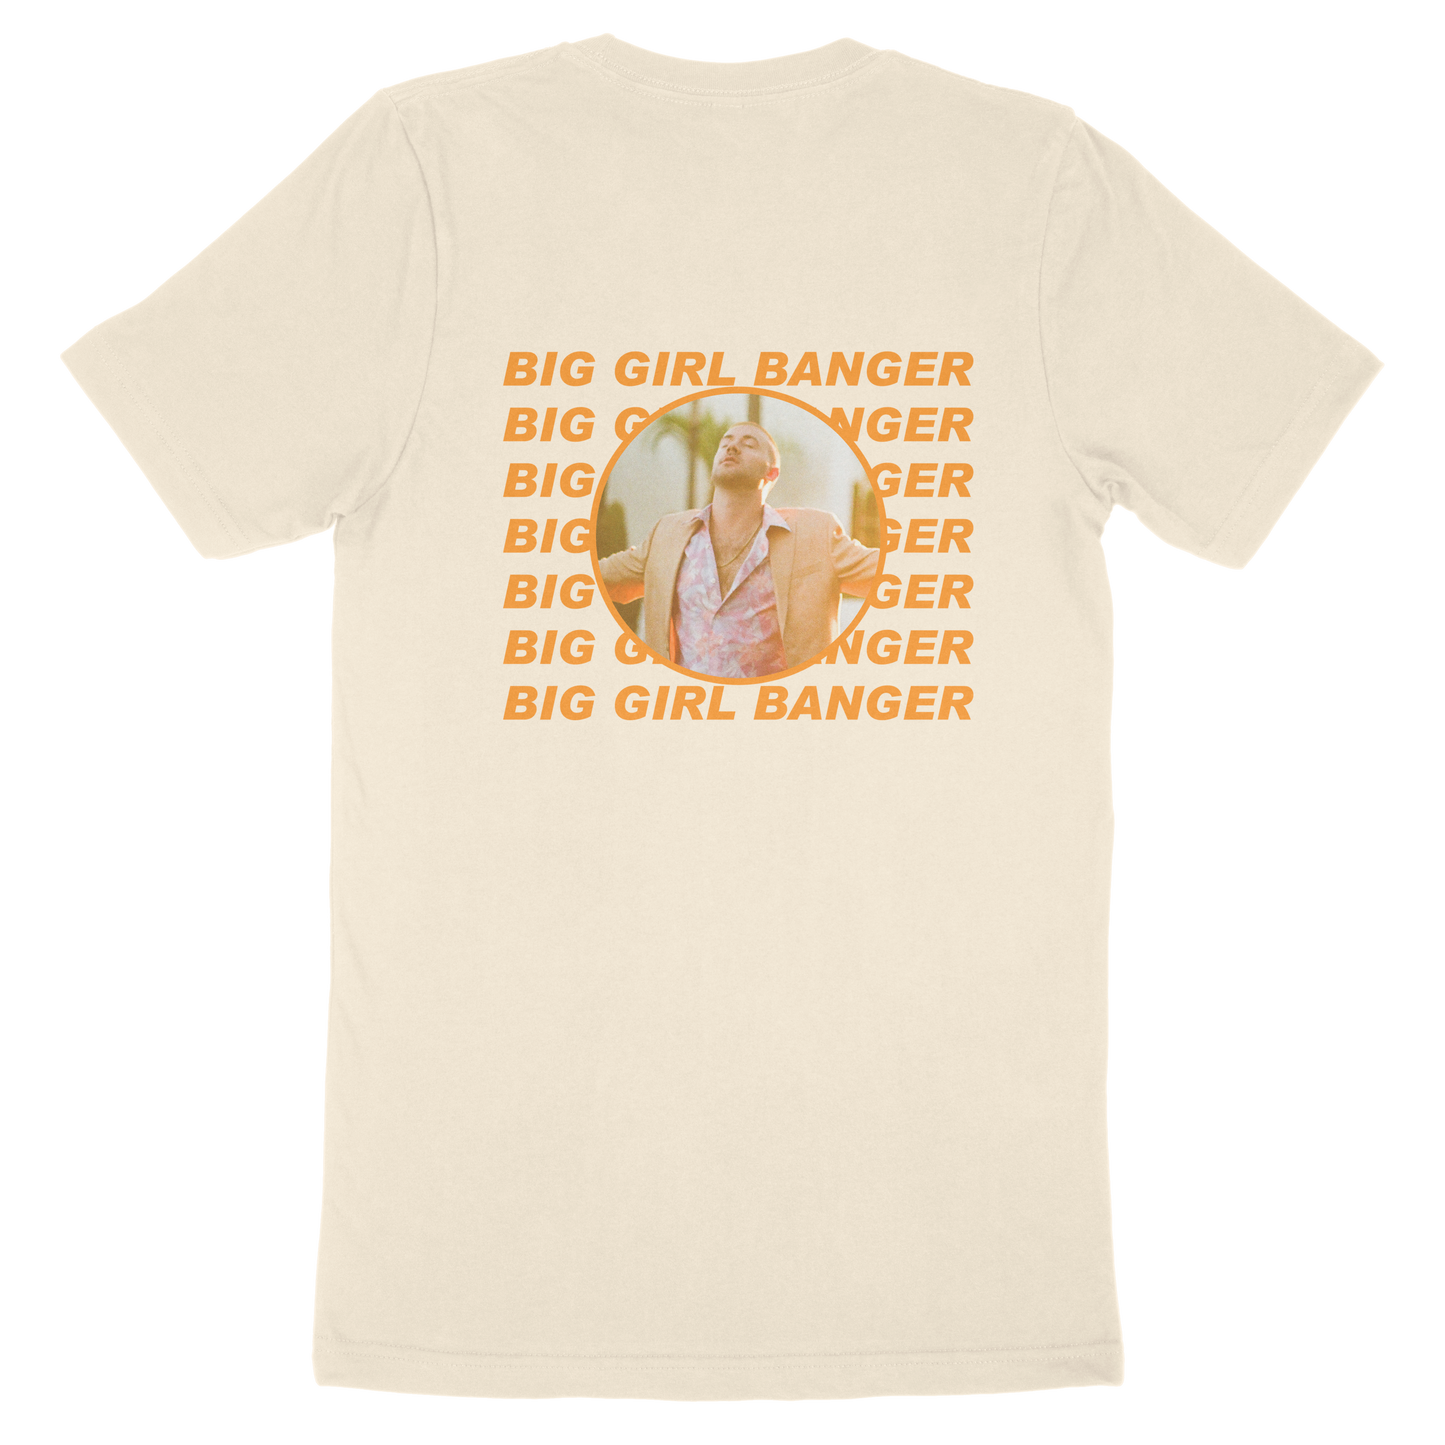 'BIG GIRL BANGER' T-Shirt